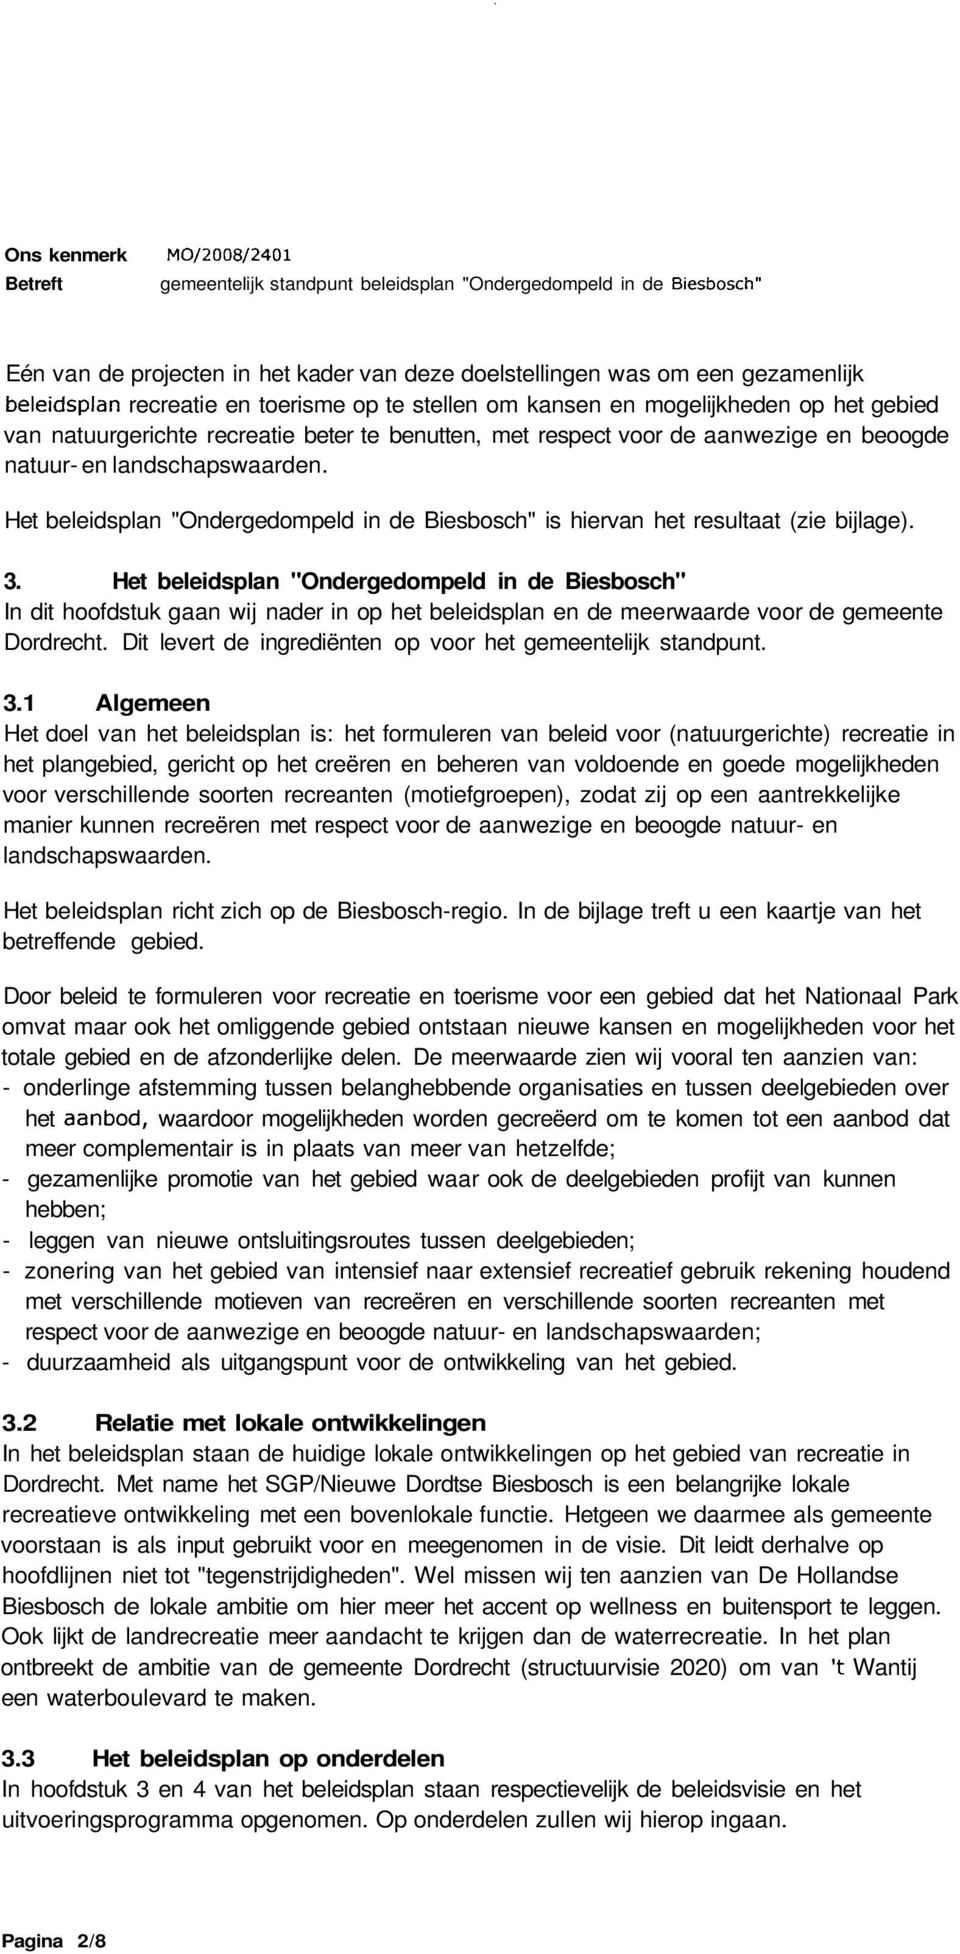 Het beleidsplan "Ondergedompeld in de Biesbosch" In dit hoofdstuk gaan wij nader in op het beleidsplan en de meerwaarde voor de gemeente Dordrecht.